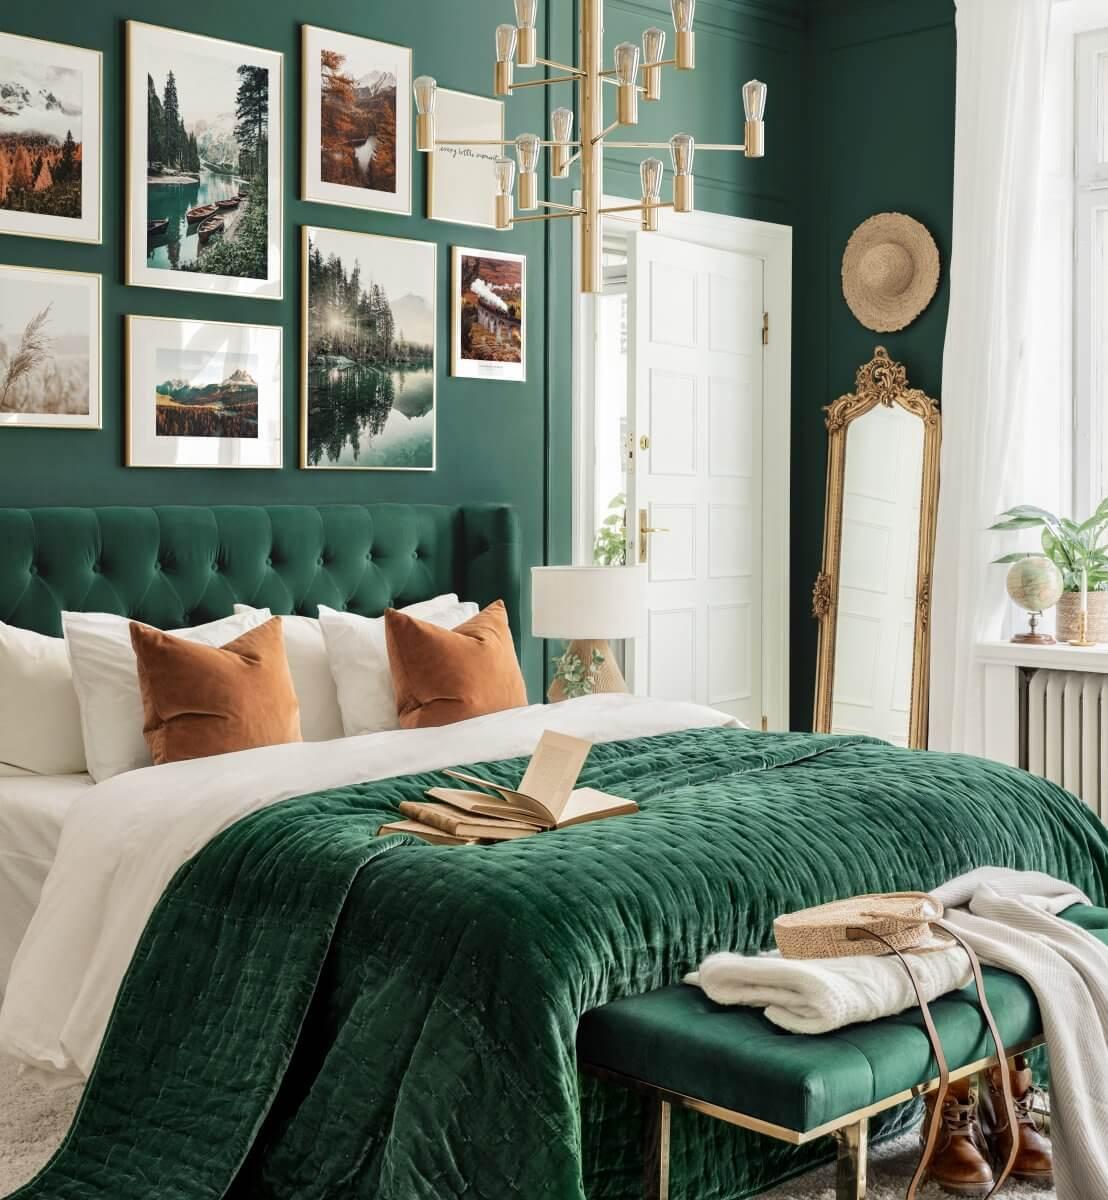 Thiết kế phòng ngủ màu xanh ngọc sang trọng, hợp phong thuỷ. 